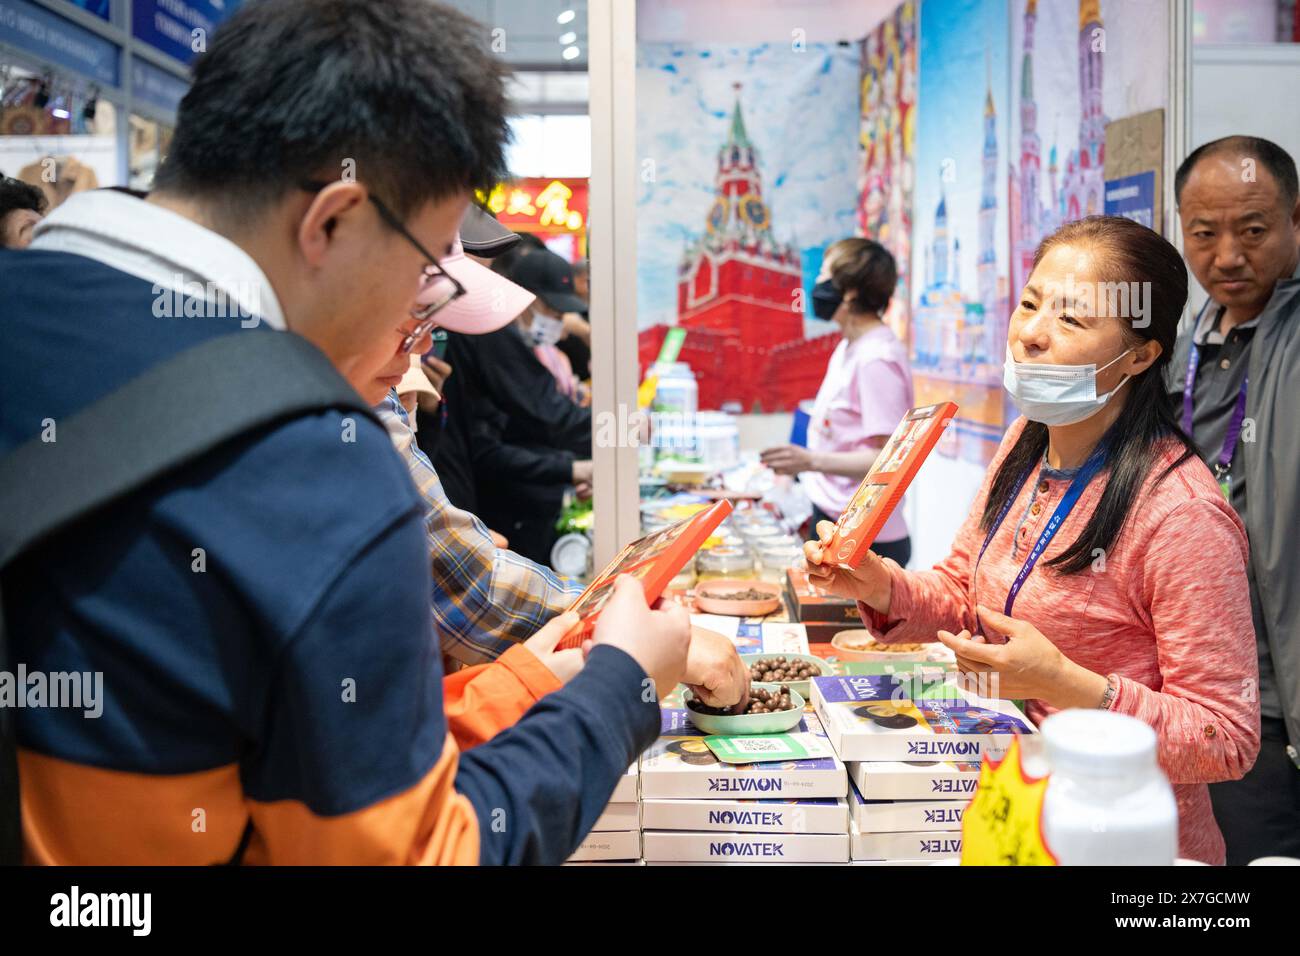 Harbin, Chinas Provinz Heilongjiang. Mai 2024. Besucher kaufen während der achten China-Russia Expo in Harbin, nordöstliche Provinz Heilongjiang, am 20. Mai 2024 ein. Über 5.000 ausländische Käufer registrierten sich auf der expo und Vertreter aus 44 Ländern und Regionen nahmen an der expo Teil. Die Ausstellungsfläche erstreckt sich auf 388.000 Quadratmetern und zeigt mehr als 5.000 Produkte in über 20 Hauptkategorien aus 10 Branchen. Die expo findet vom 16. Bis 21. Mai statt und ist auch ein kulinarisches fest, bei dem Besucher eine große Auswahl an Speisen und Getränken probieren können. Quelle: Xie Jianfei/Xinhua/Alamy Live News Stockfoto